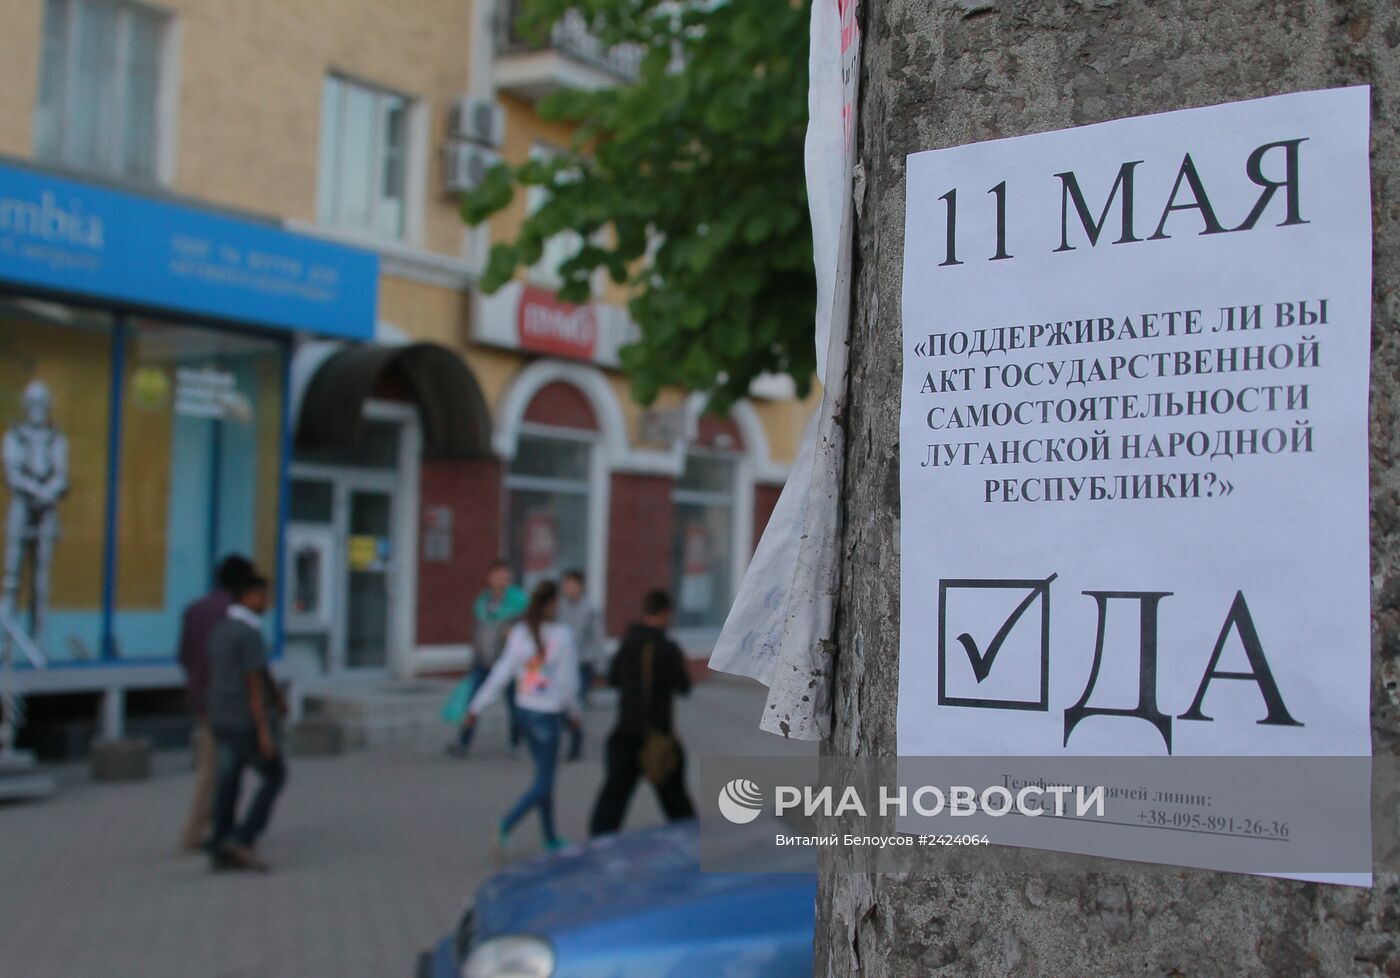 Агитационная листовка в поддержку референдума 11 мая на улице Луганска